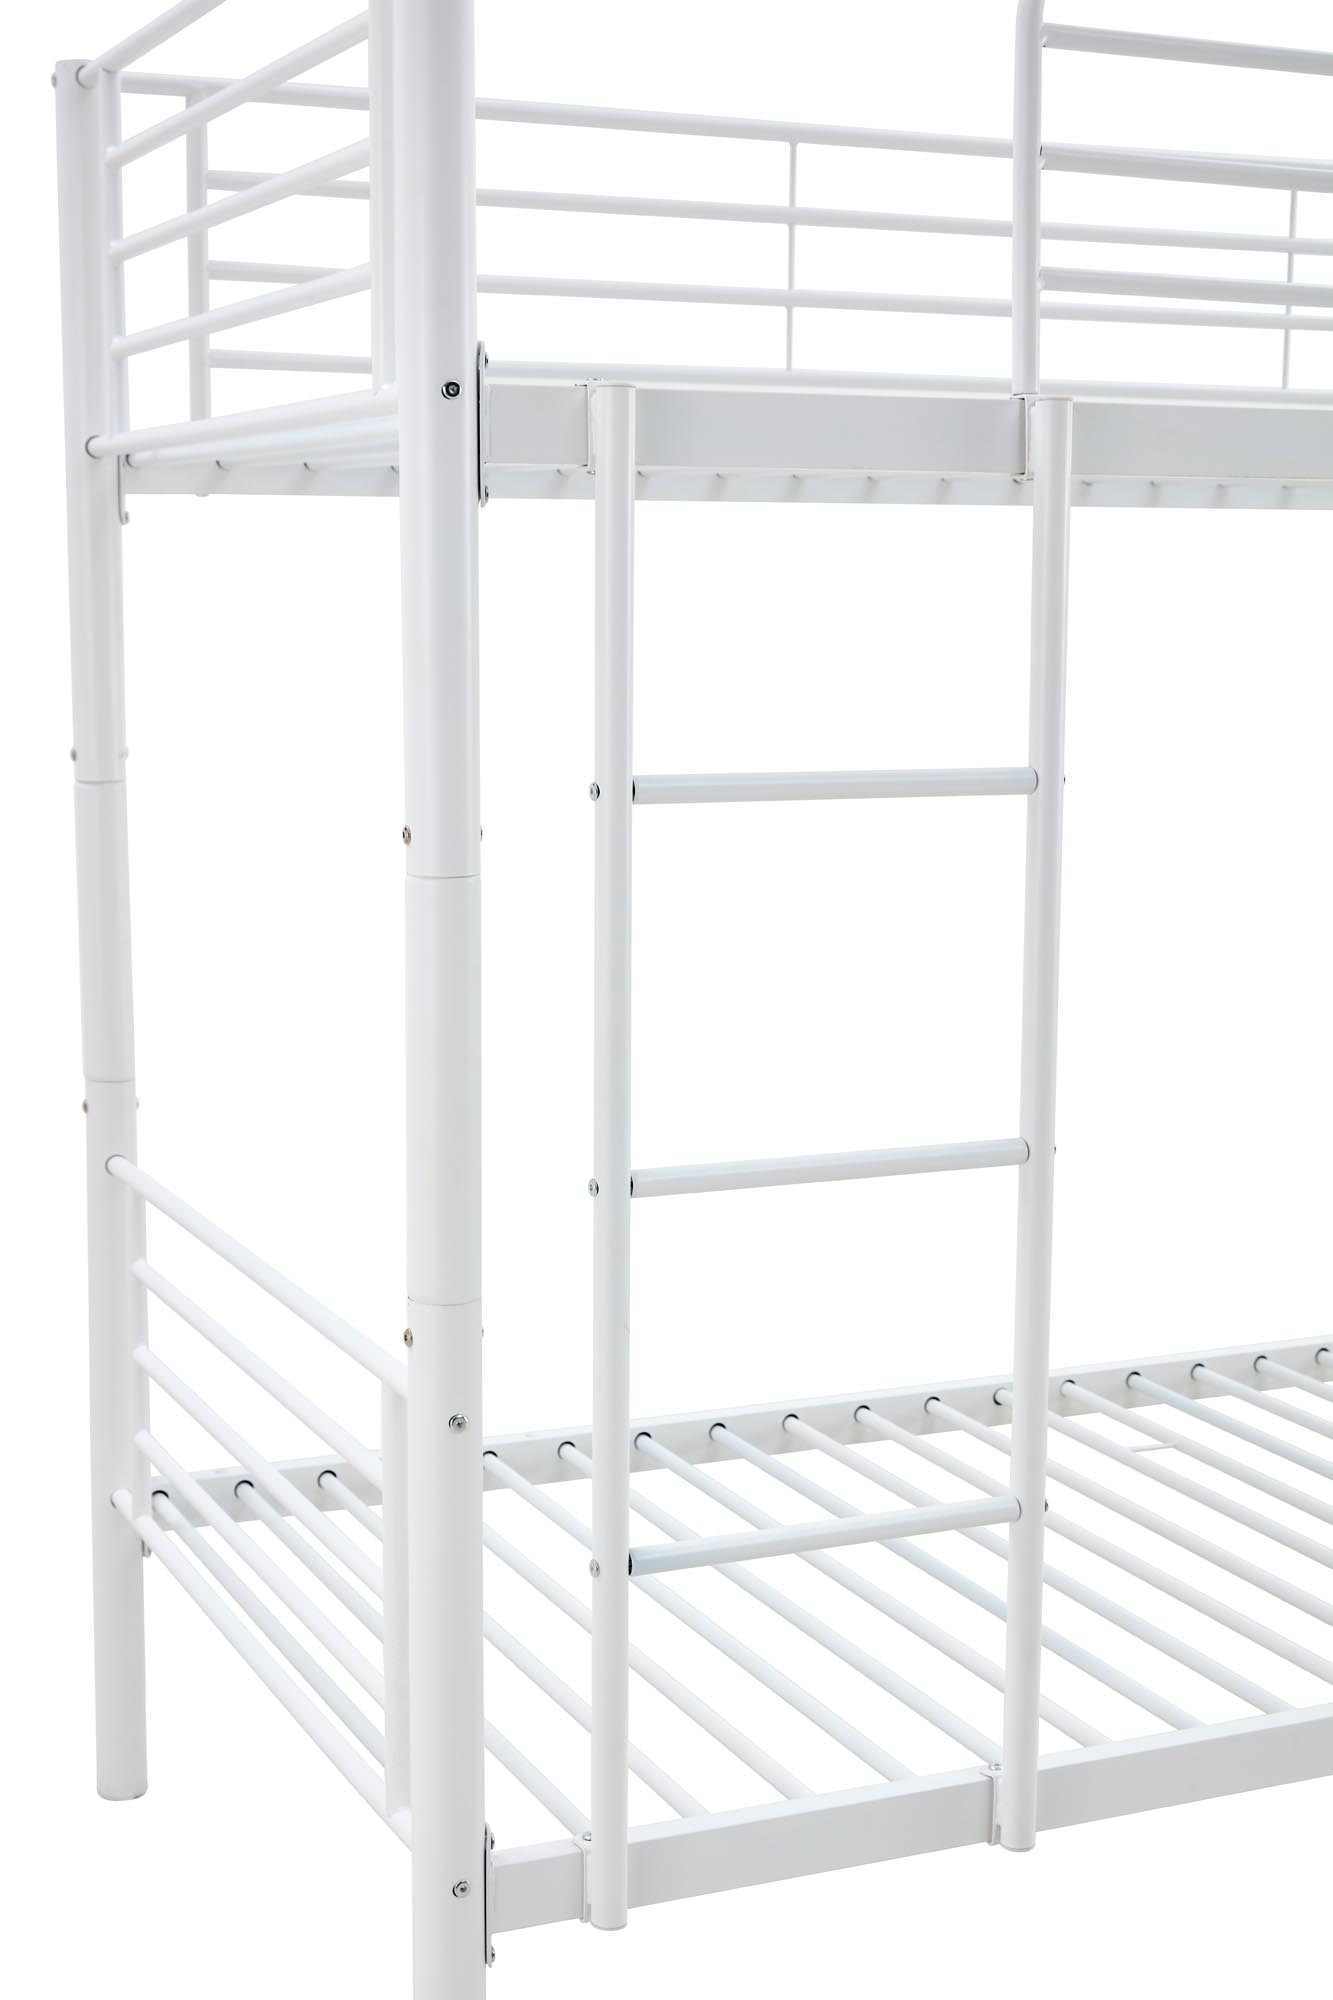 BUNKY emeletes ágy / lehetőség két egyszemélyes ágyra - fehér bunky postel patrová  / opcja dwoch lozek pojedynczych 90, Bílý